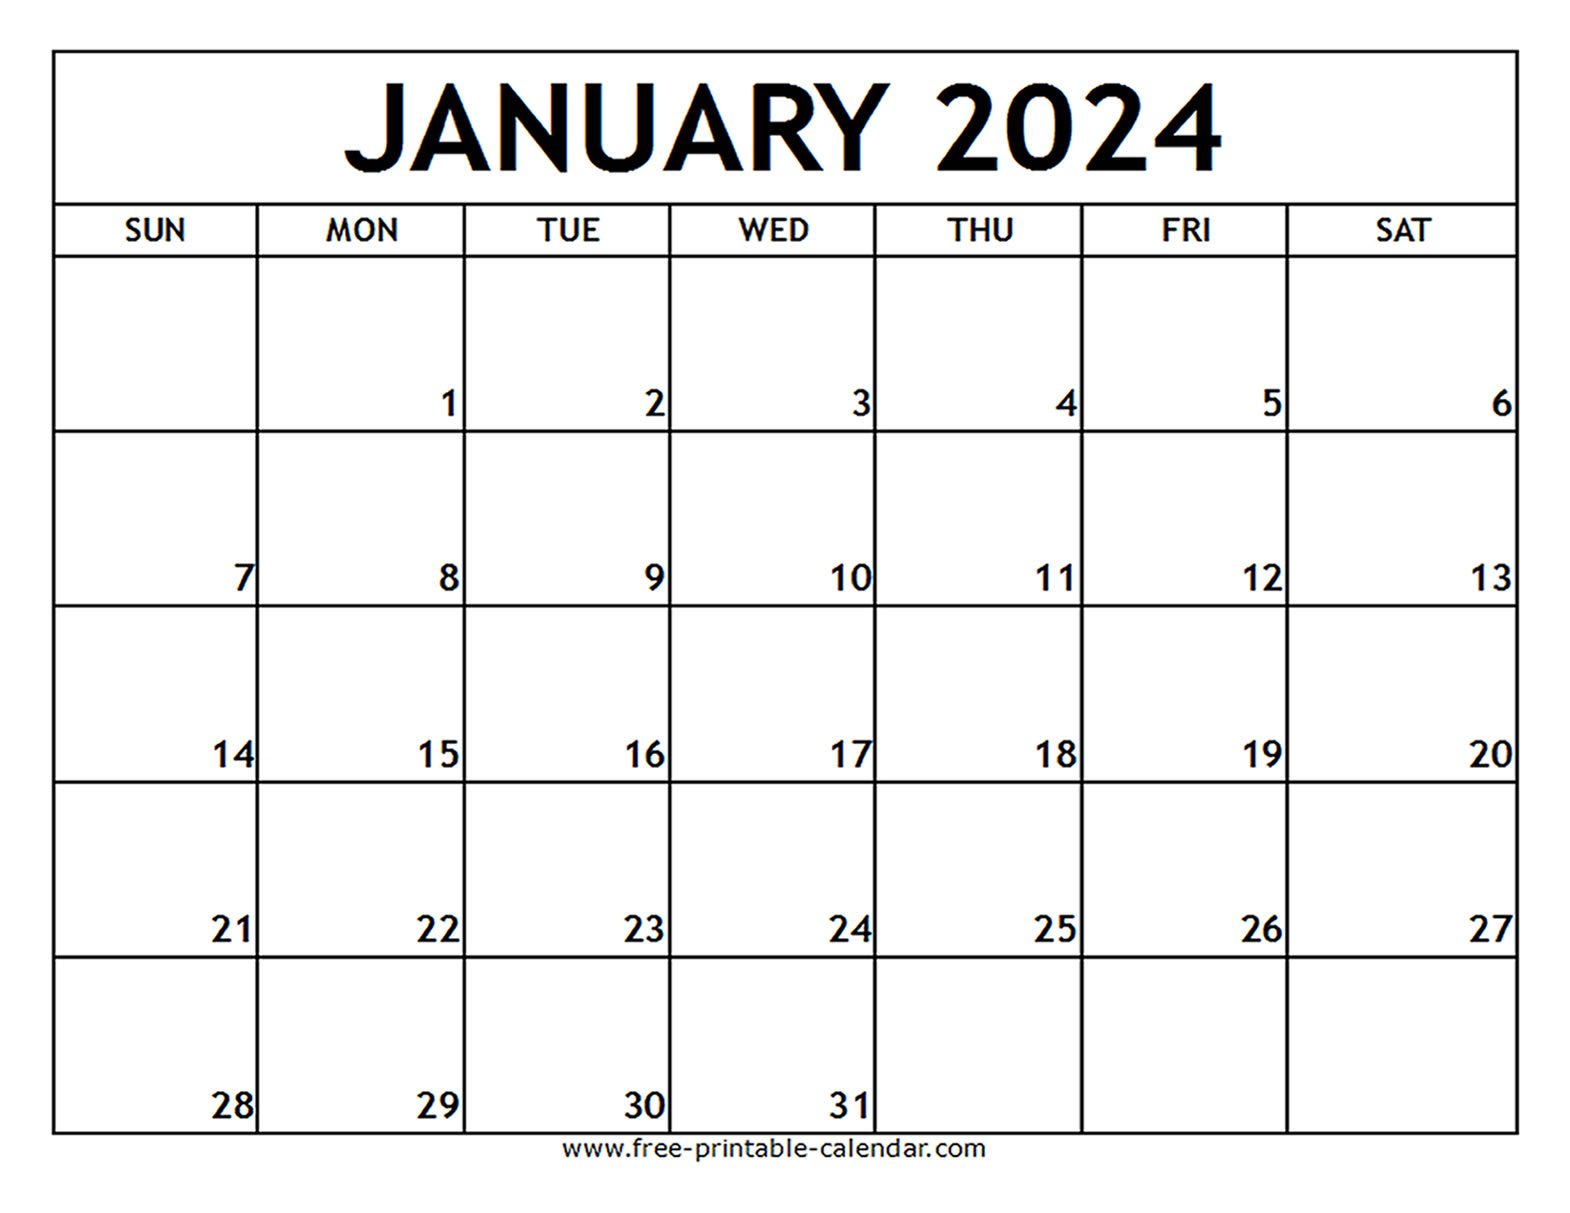 January 2024 Printable Calendar - Free-Printable-Calendar | Printable Calendar January 2024 Australia